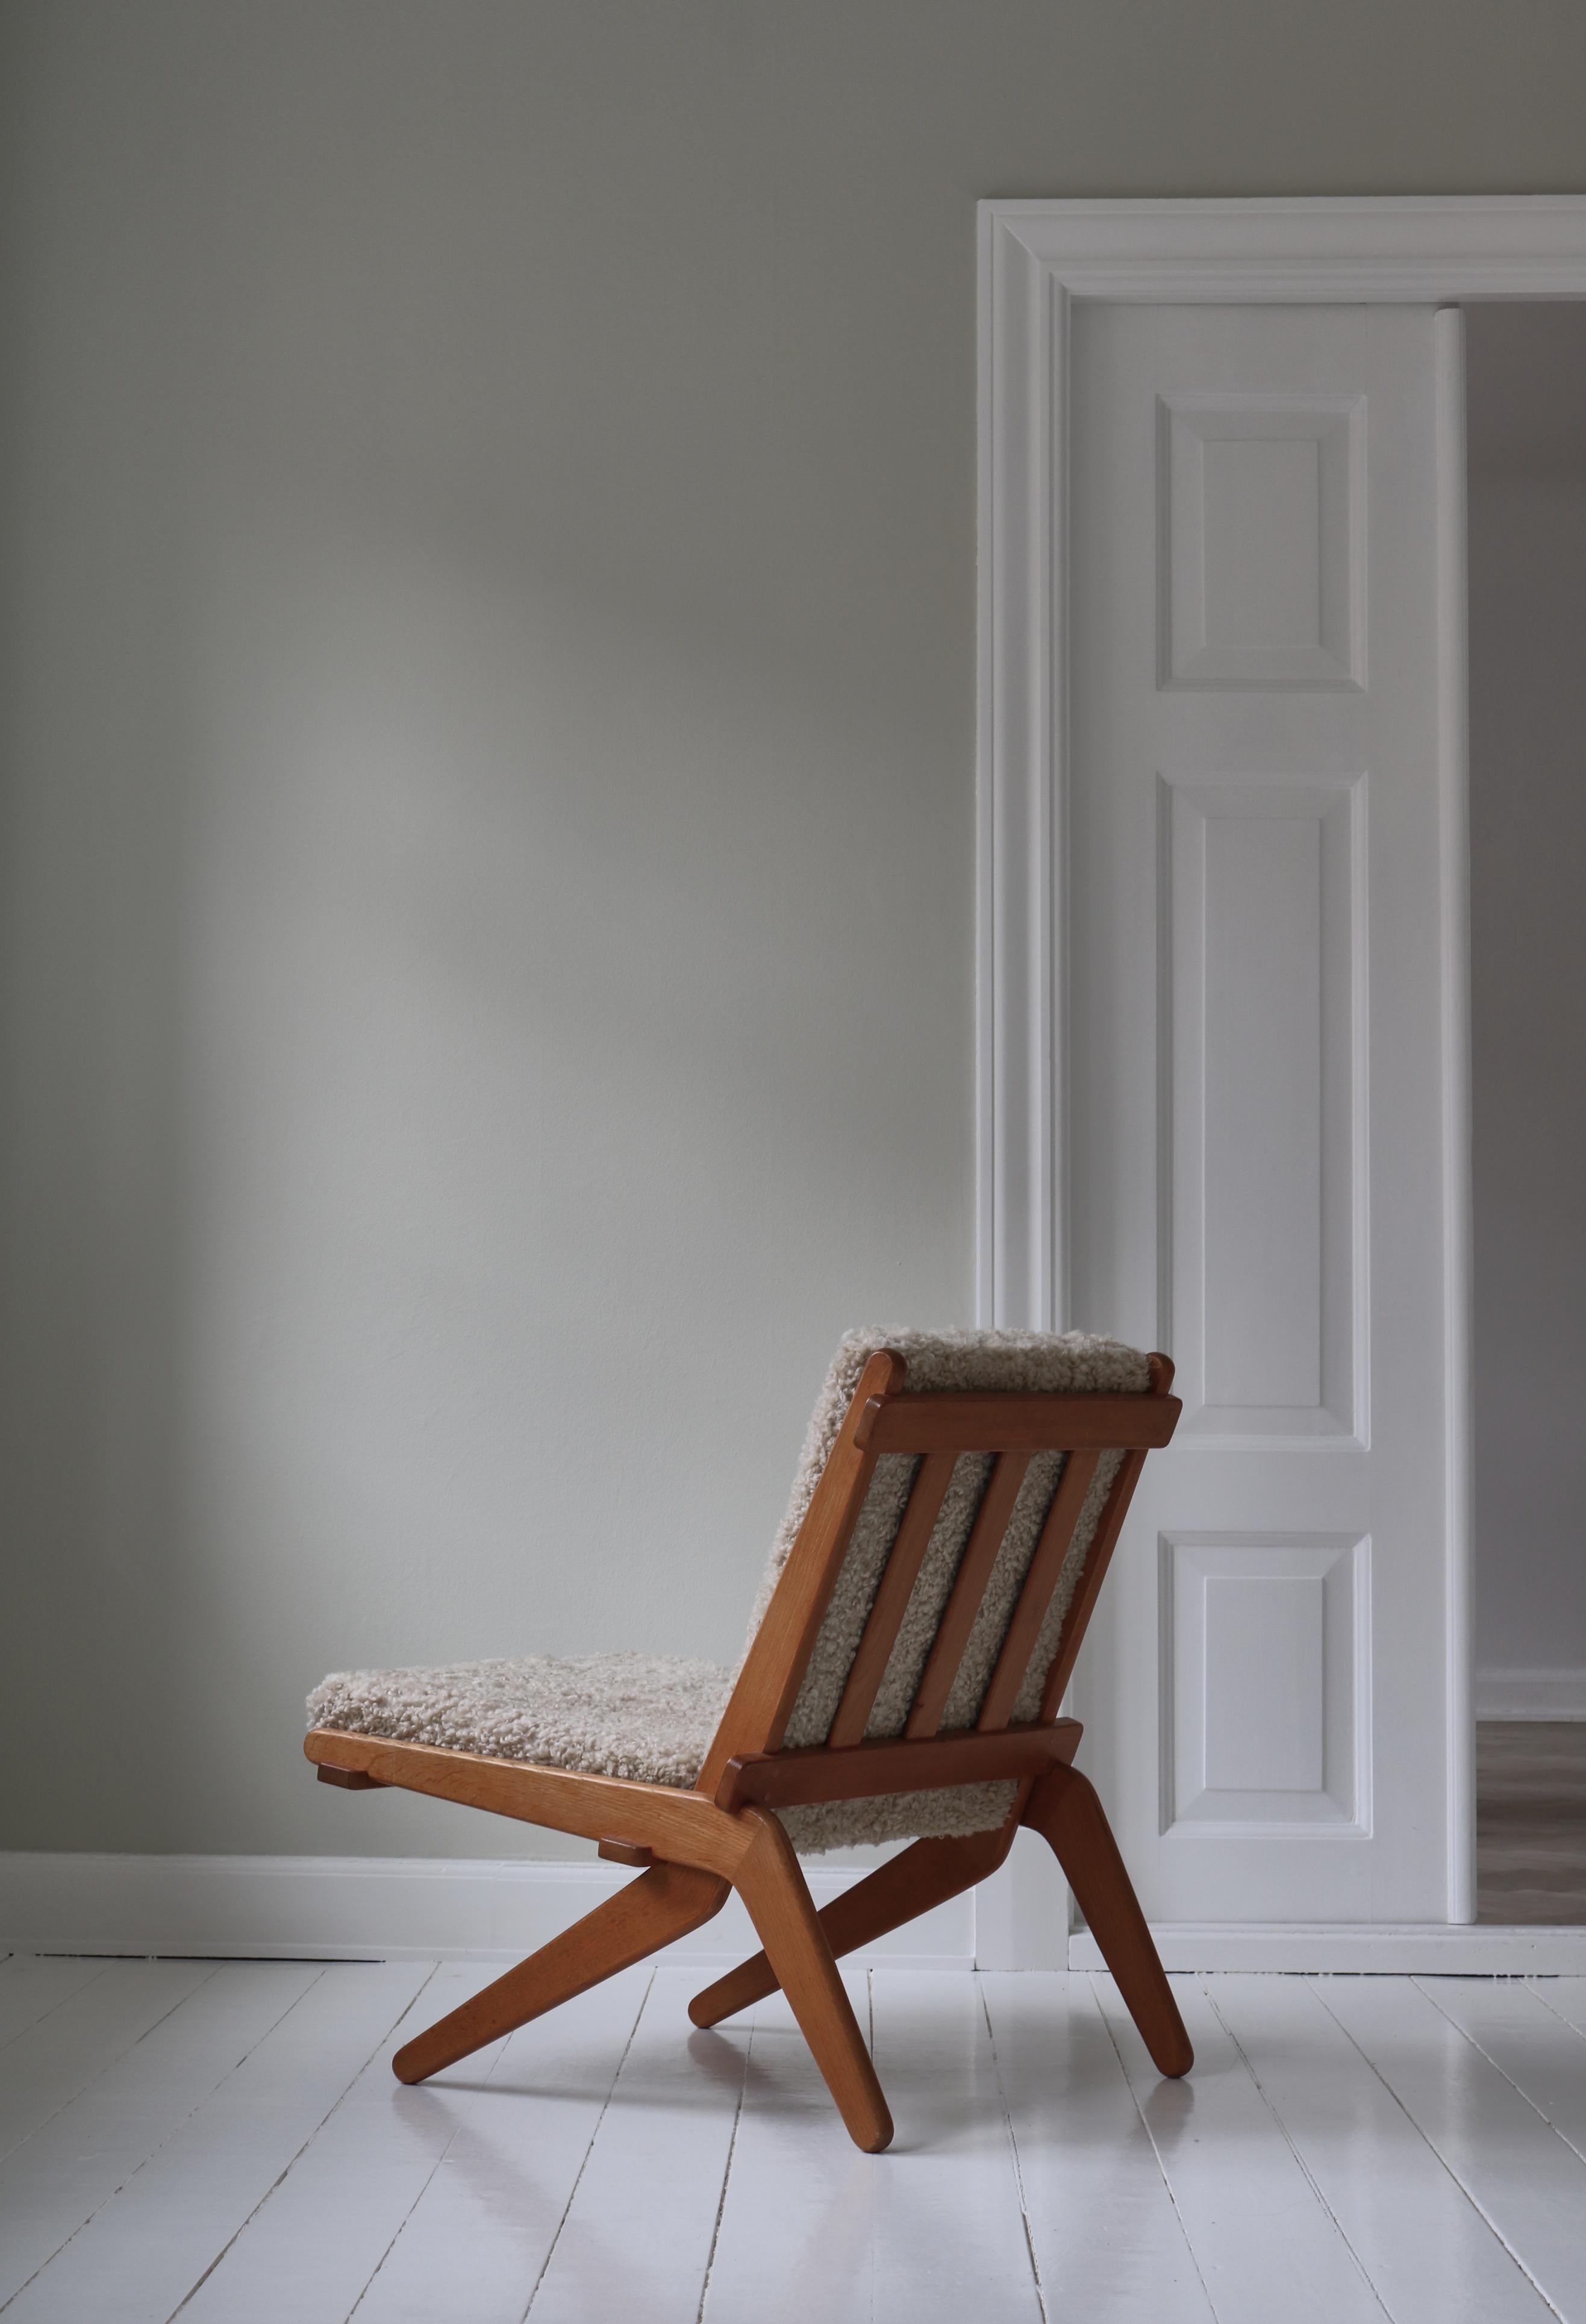 Rare et emblématique chaise danoise pliante à ciseaux en chêne massif par Preben Thorsen pour l'ébéniste Morten Olsen & Son. Cette chaise a été fabriquée en nombre très limité en 1957 et est une trouvaille très rare. Le design est brillant et